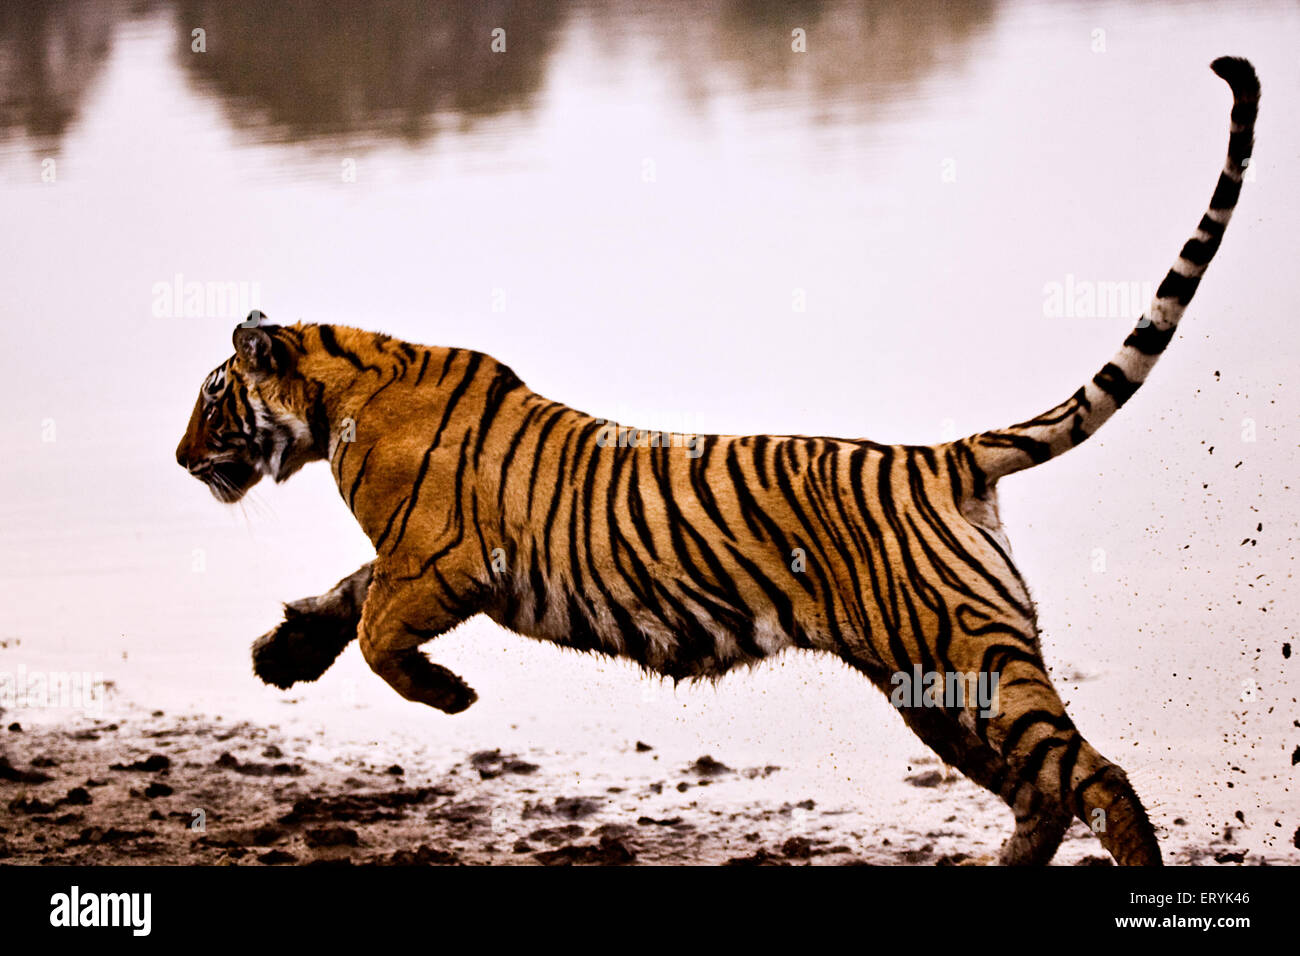 Jogo do tigre imagem de stock. Imagem de respingo, lago - 26669937